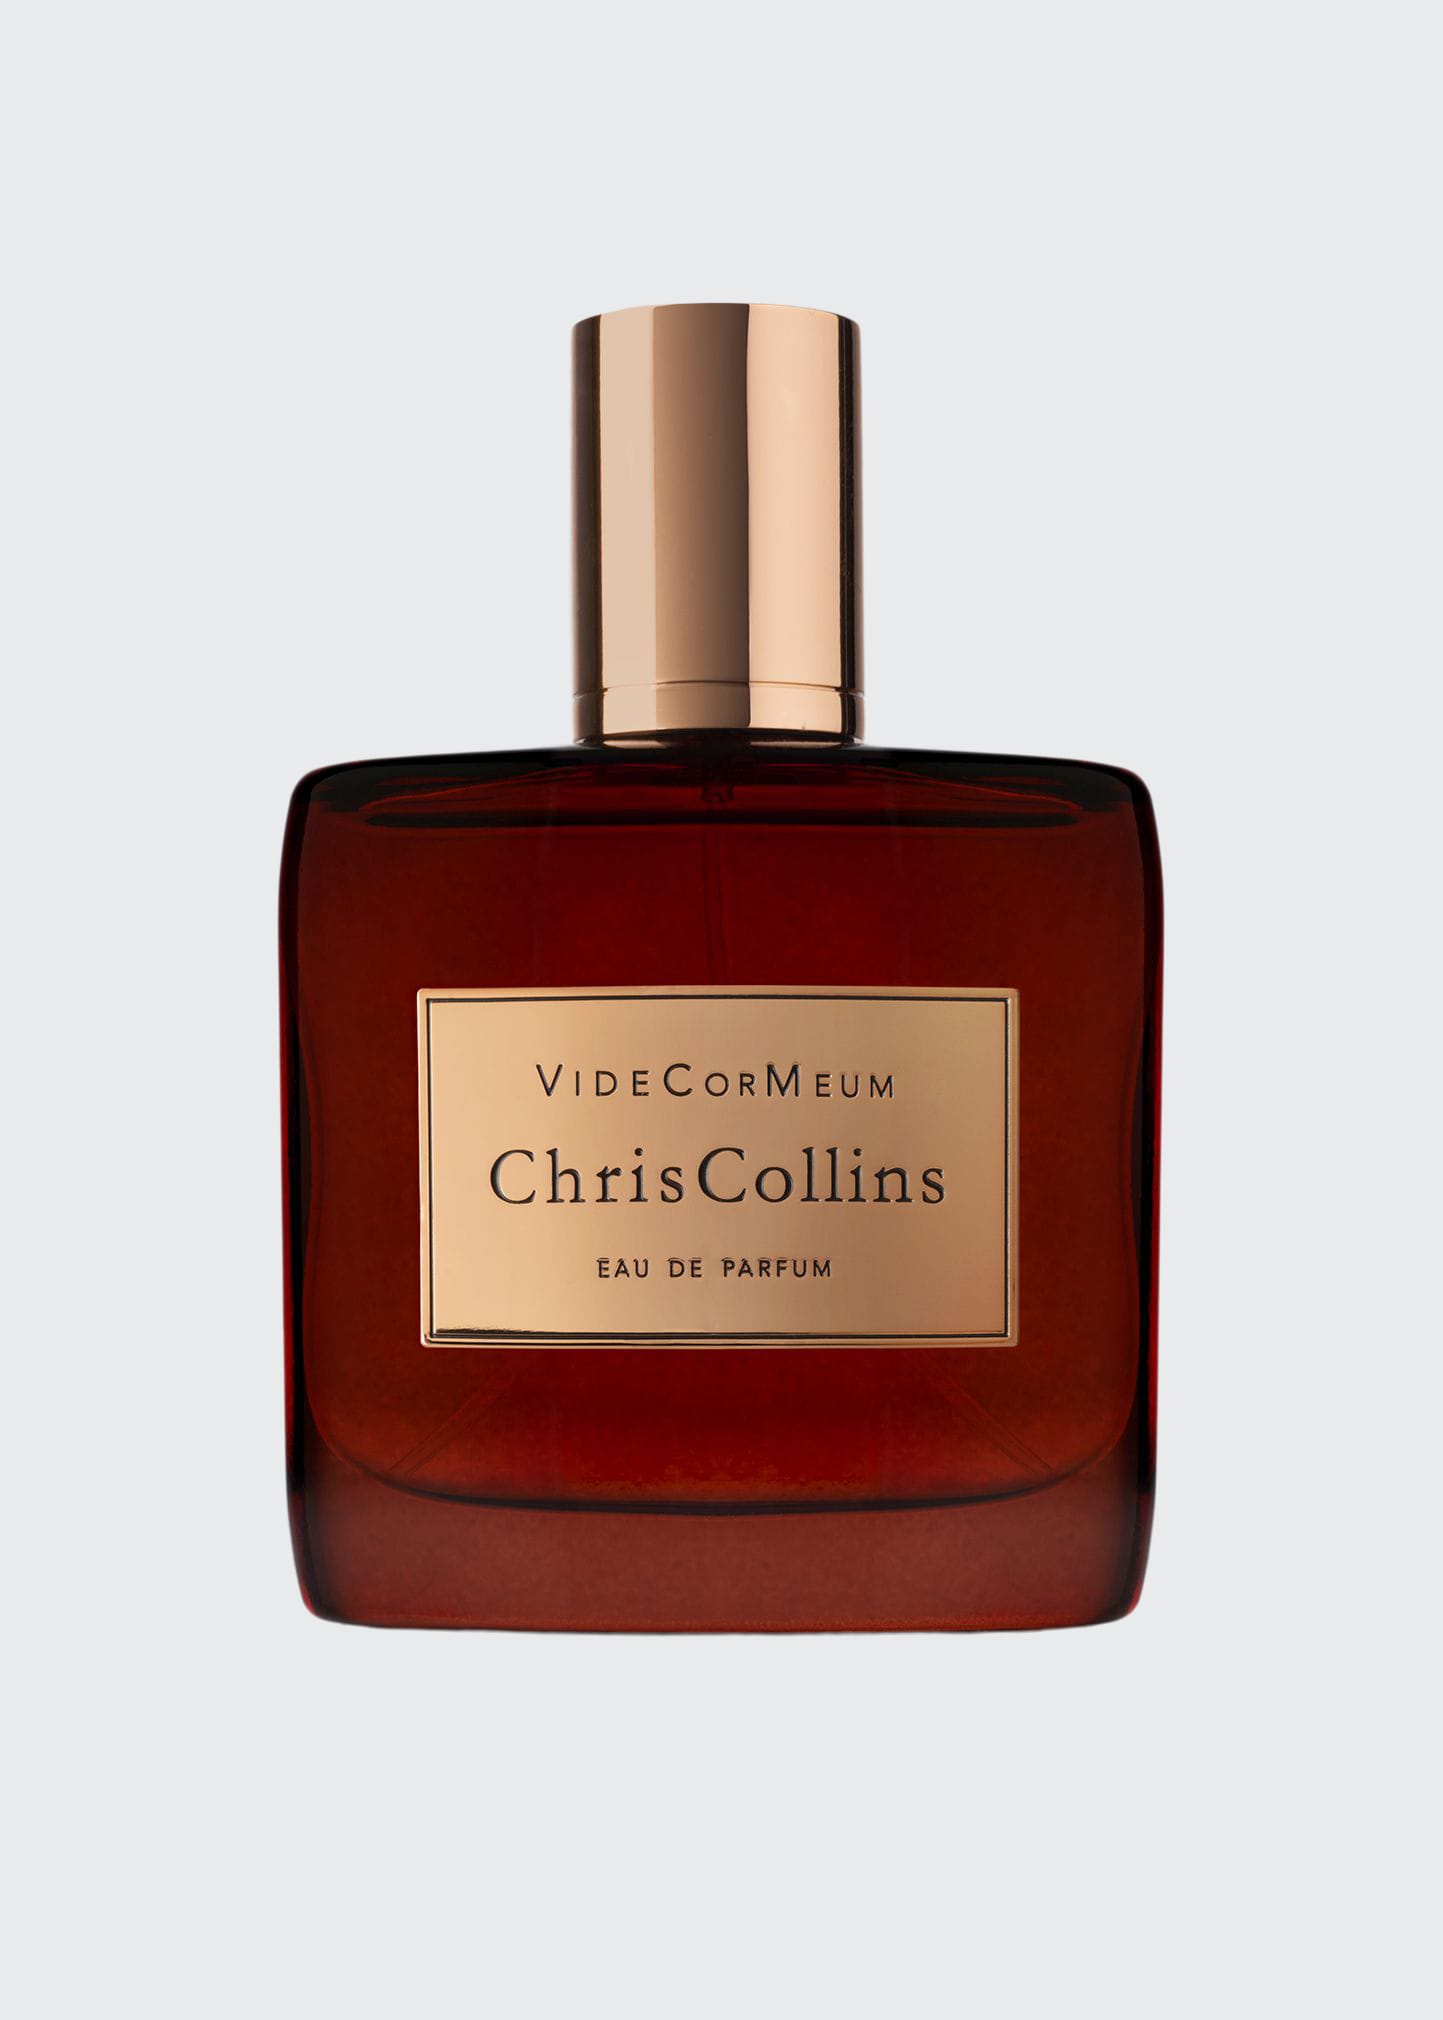 World Of Chris Collins Vide Cor Meum Eau De Parfum, 1.7 Oz./ 50 ml